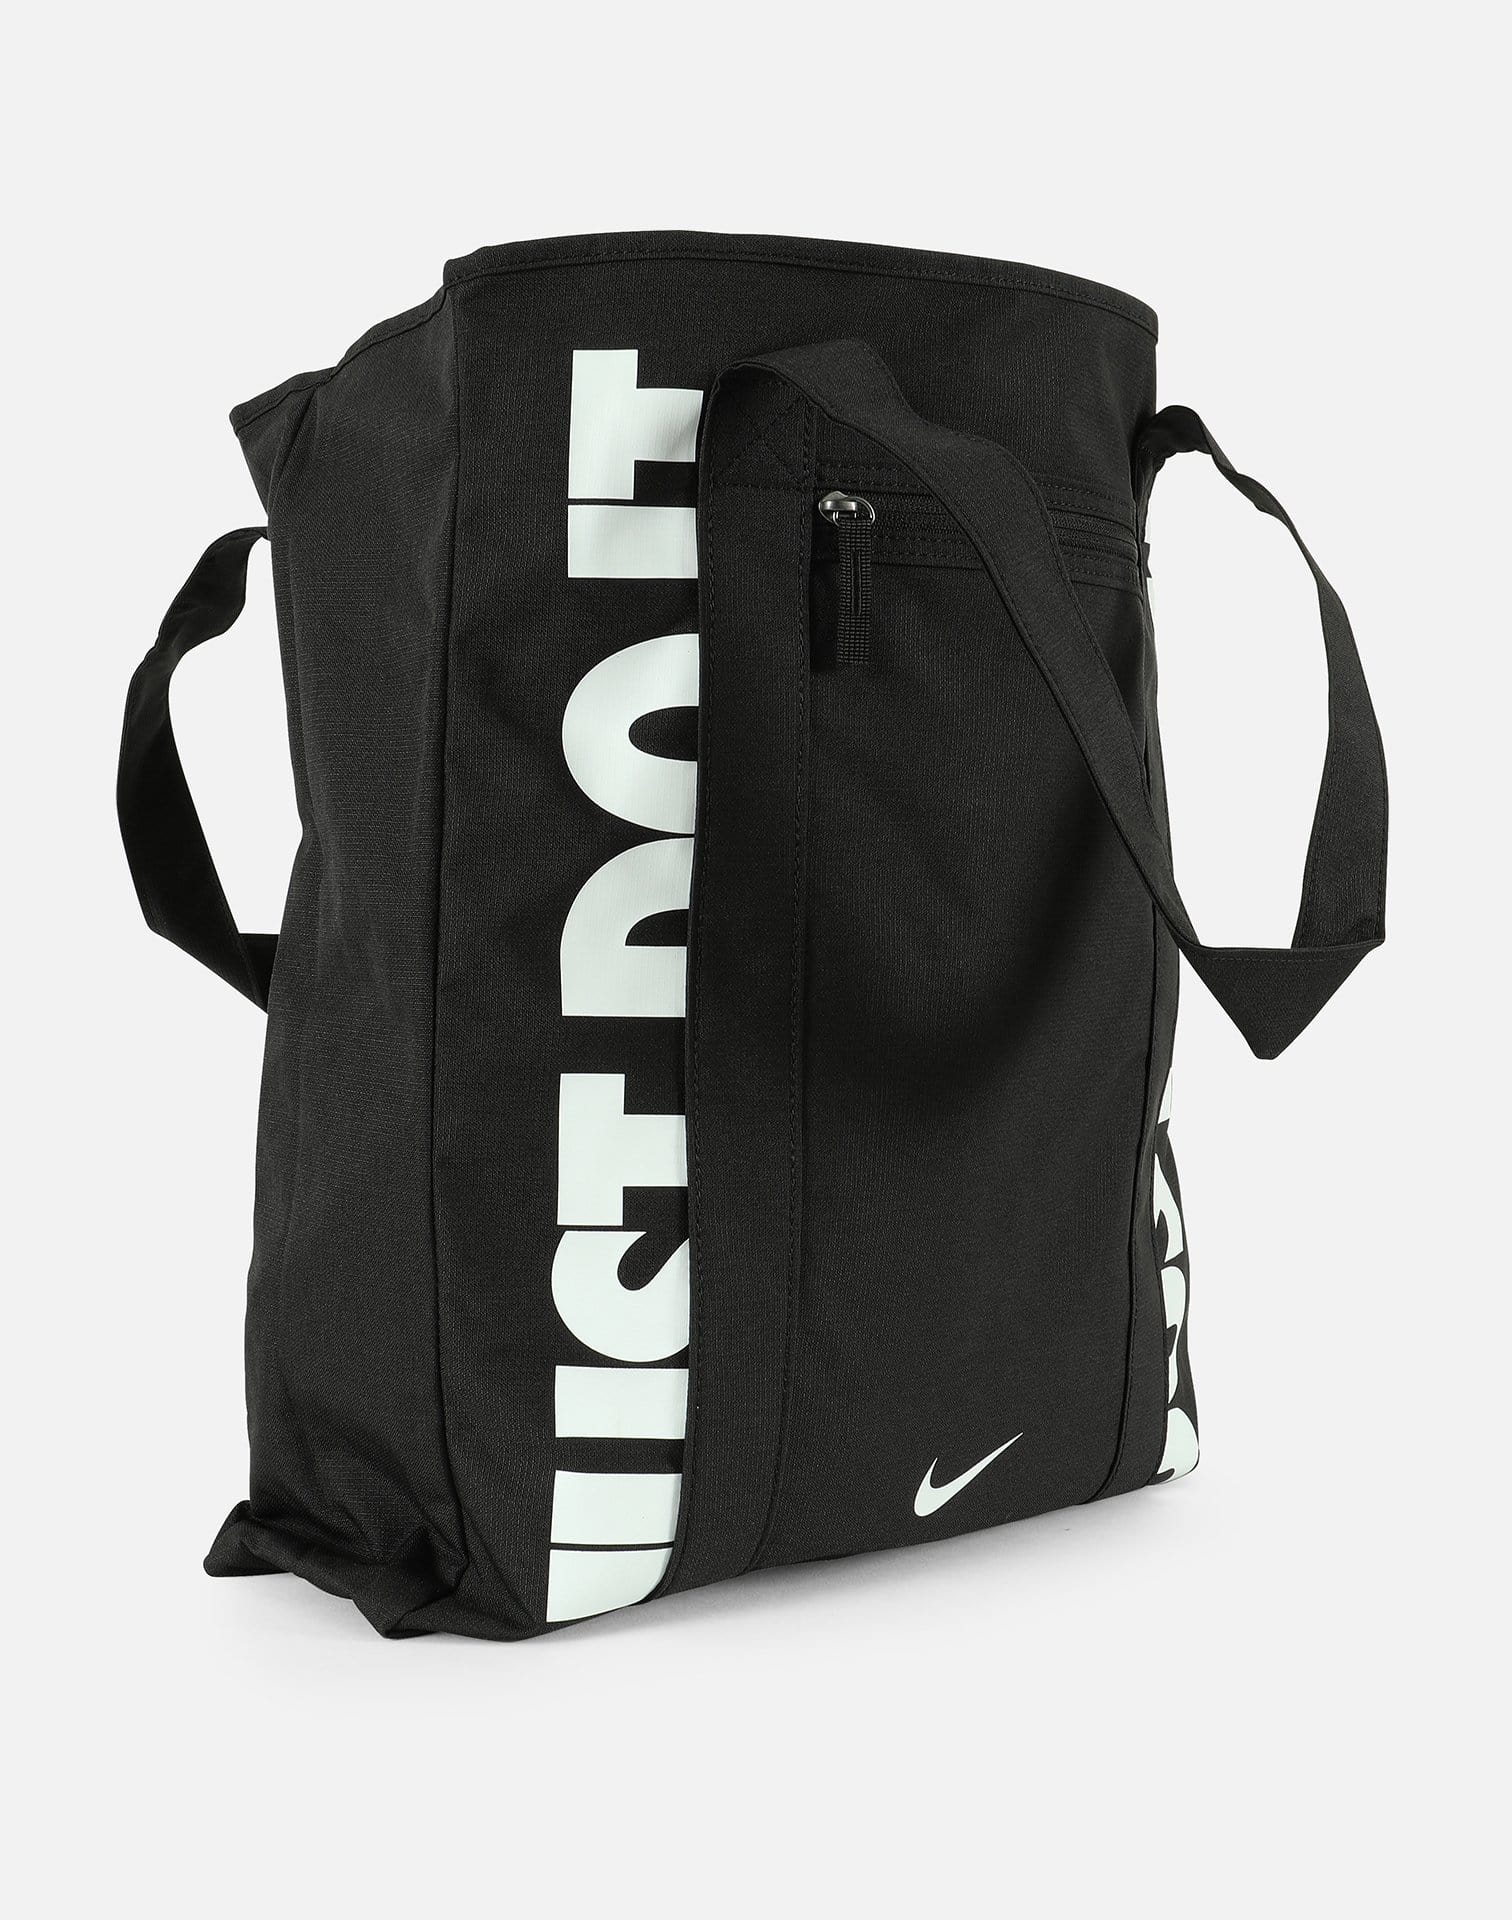 Nike RADIATE 20L Training Gym Tote Bag Coated Bottom 16" x 16" x  6"